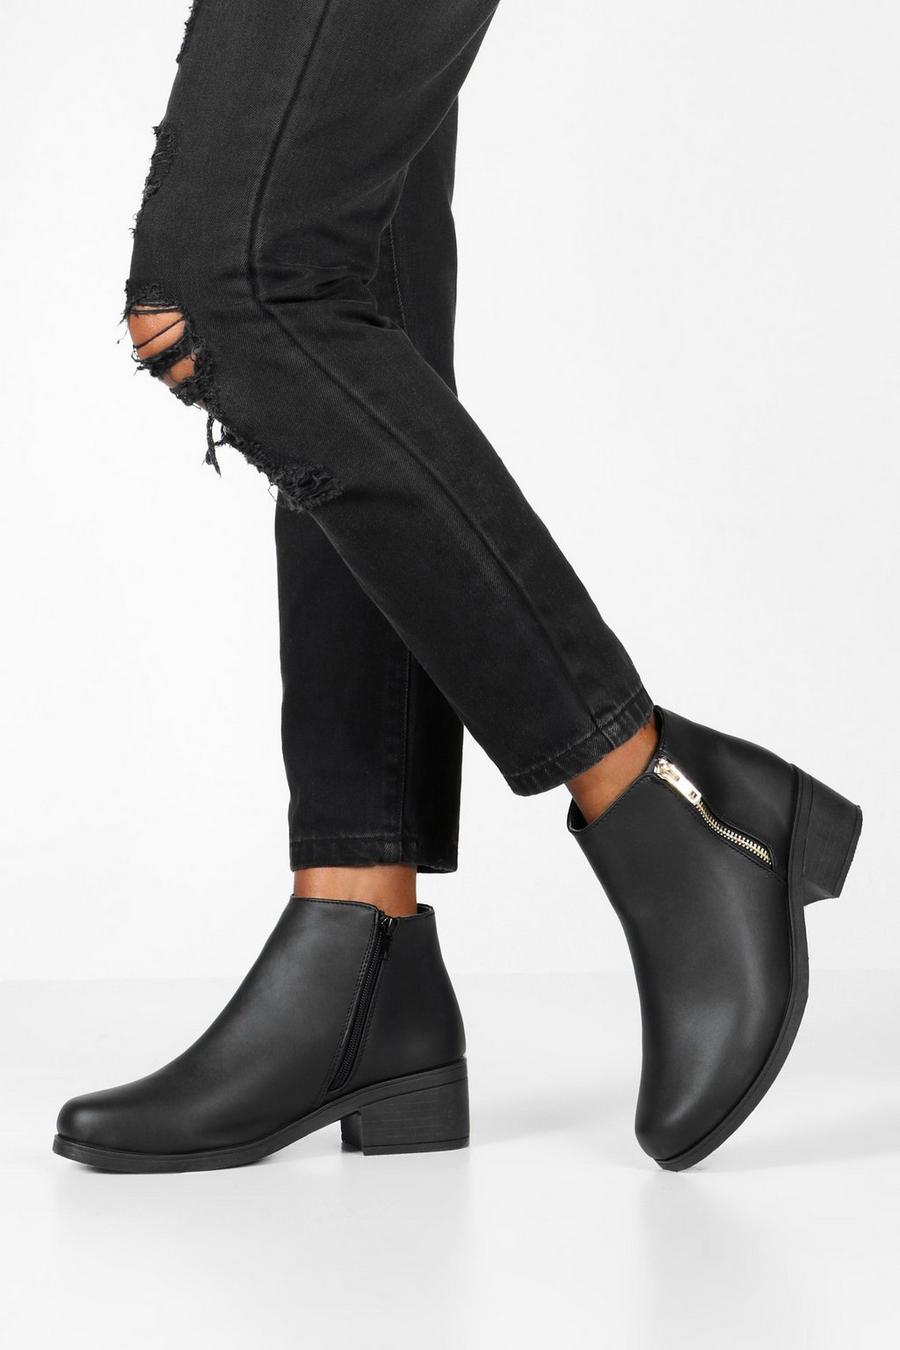 Black Zip Side Block Heel Chelsea Boots